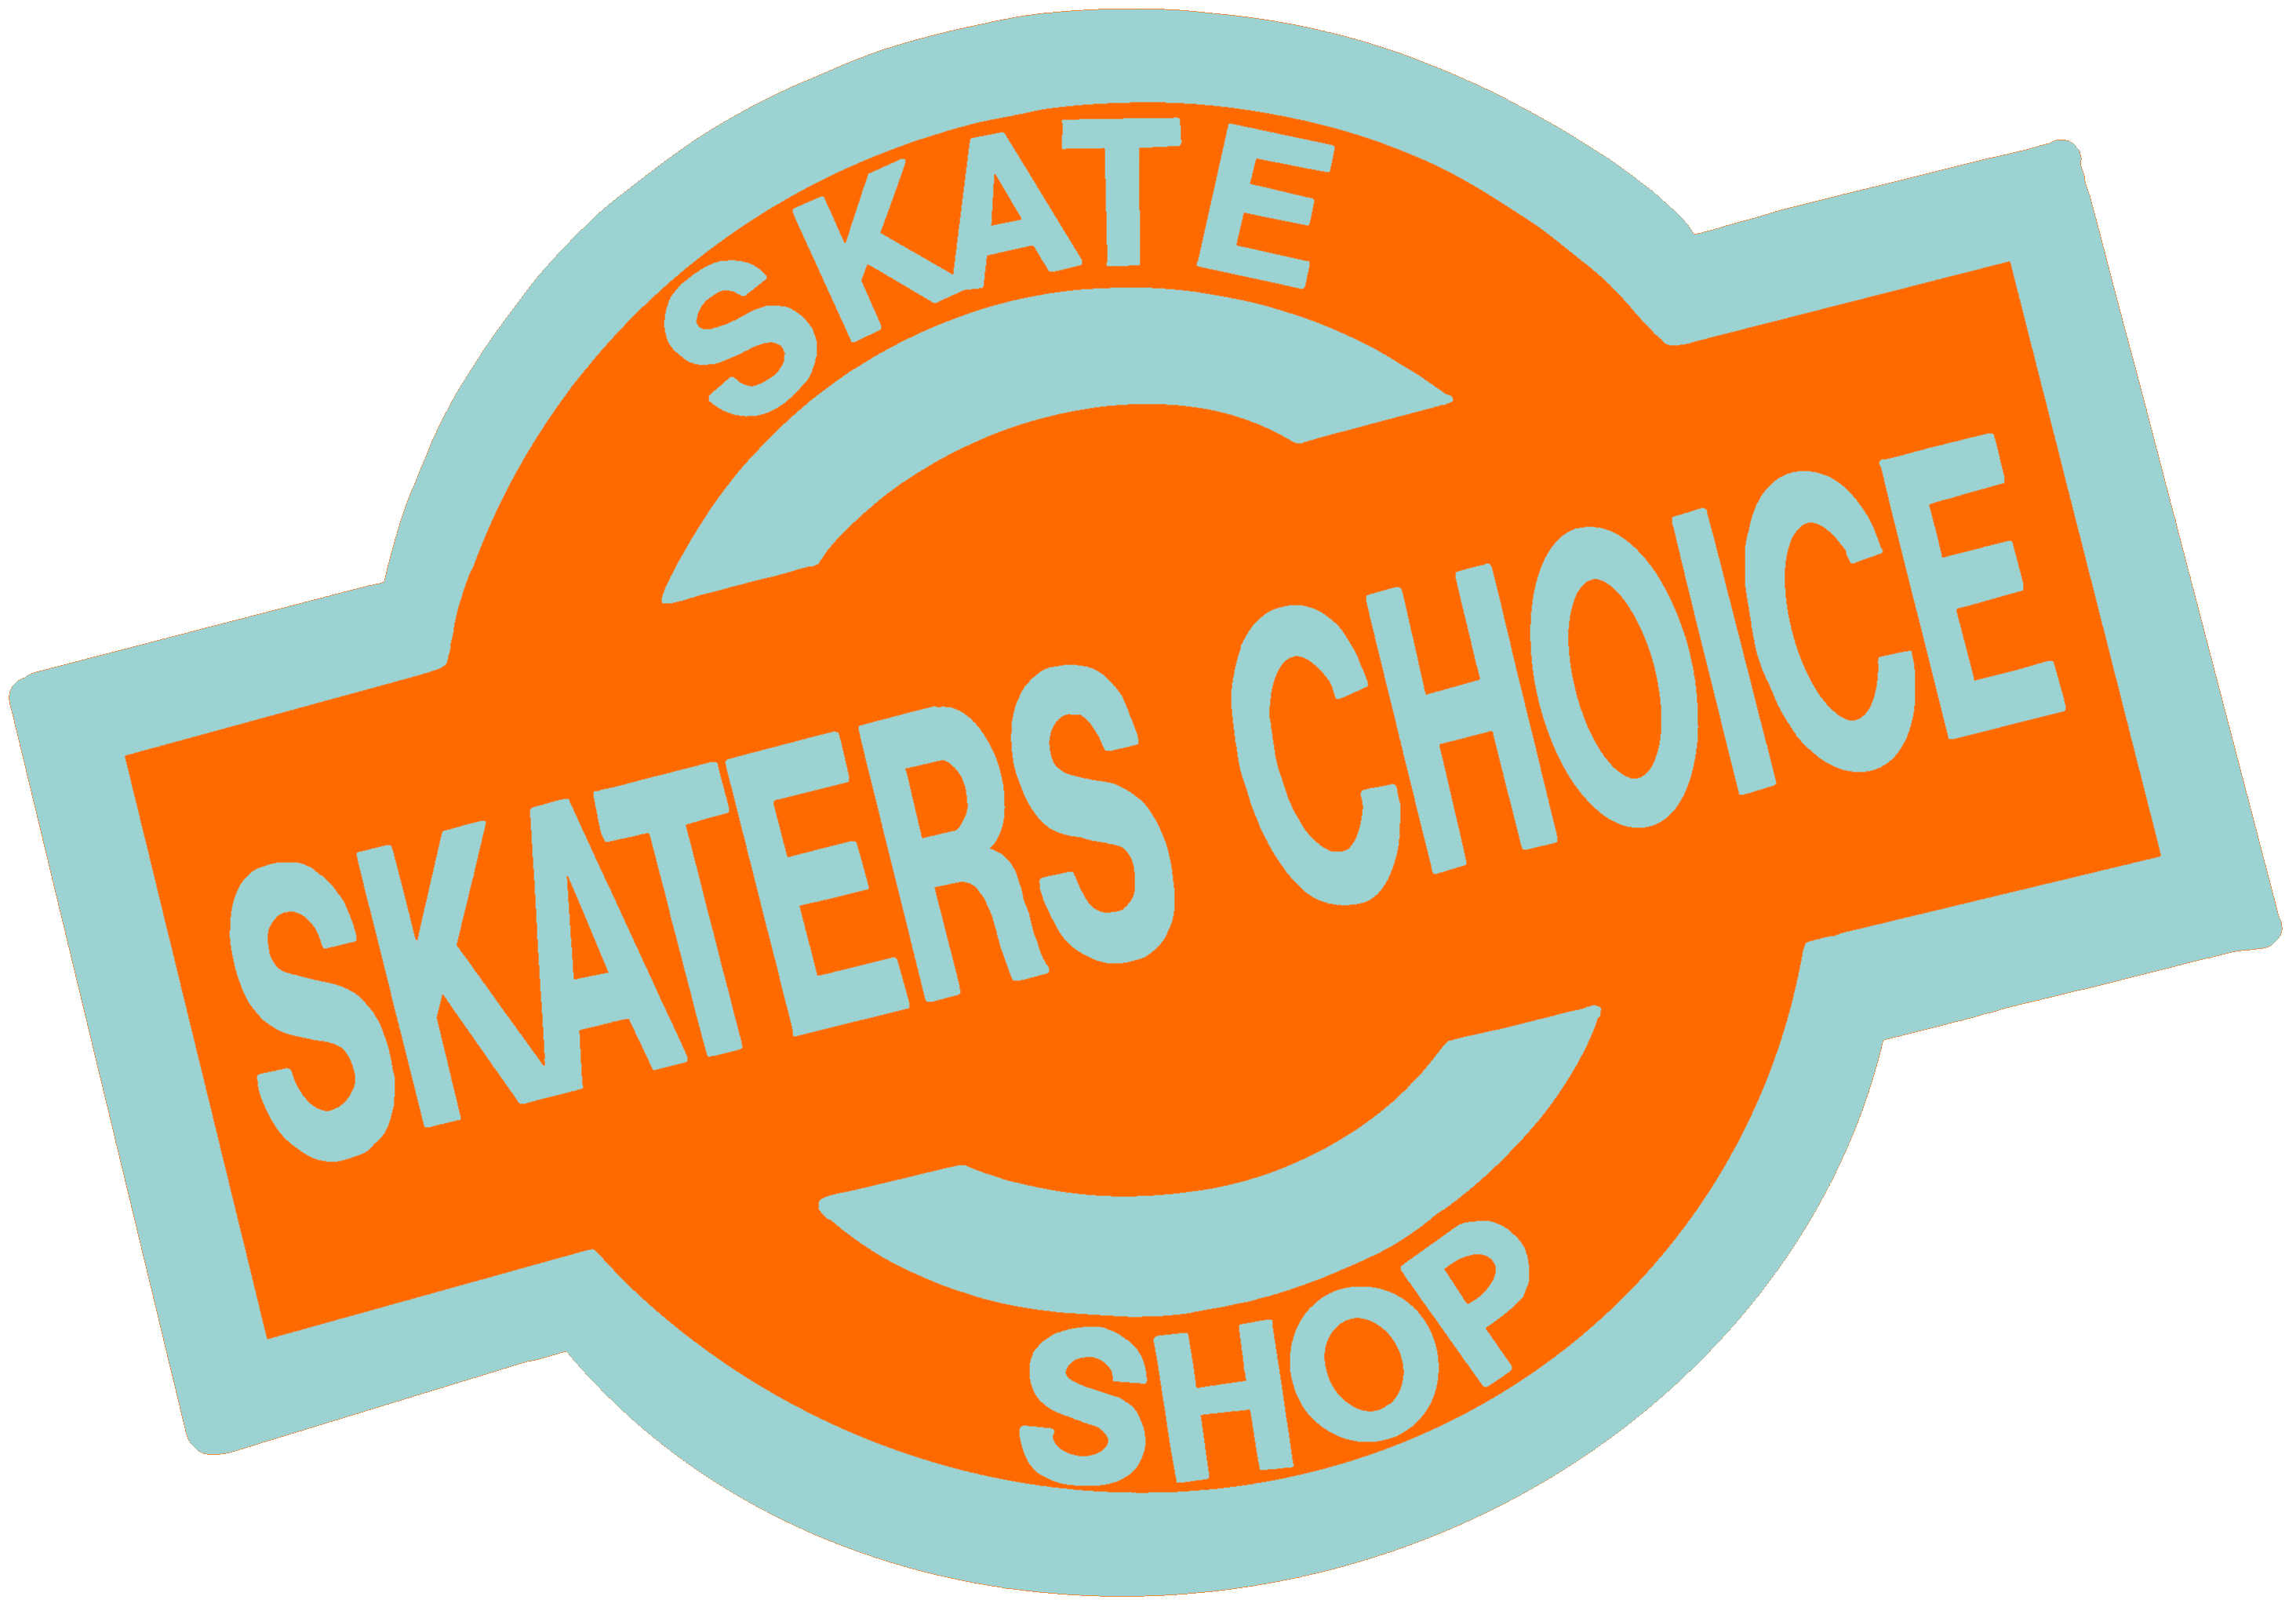 Skaters Choice Skate Shop